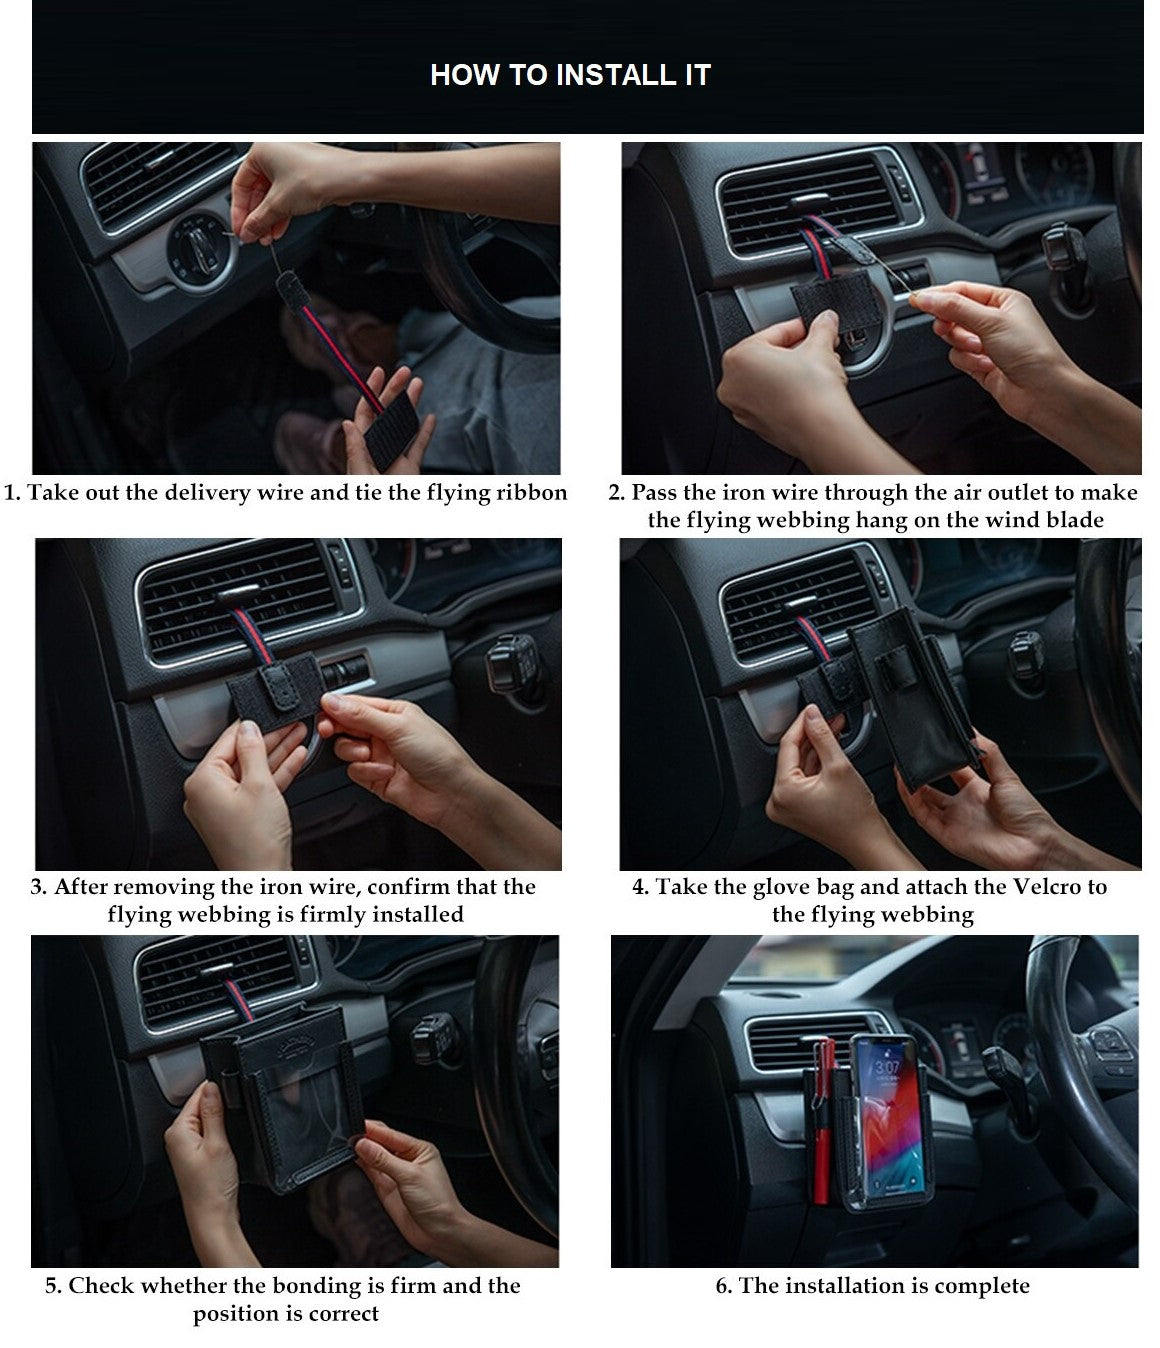 Car Pocket Air Vent Outlet Phone Mount Holder Hanging Storage